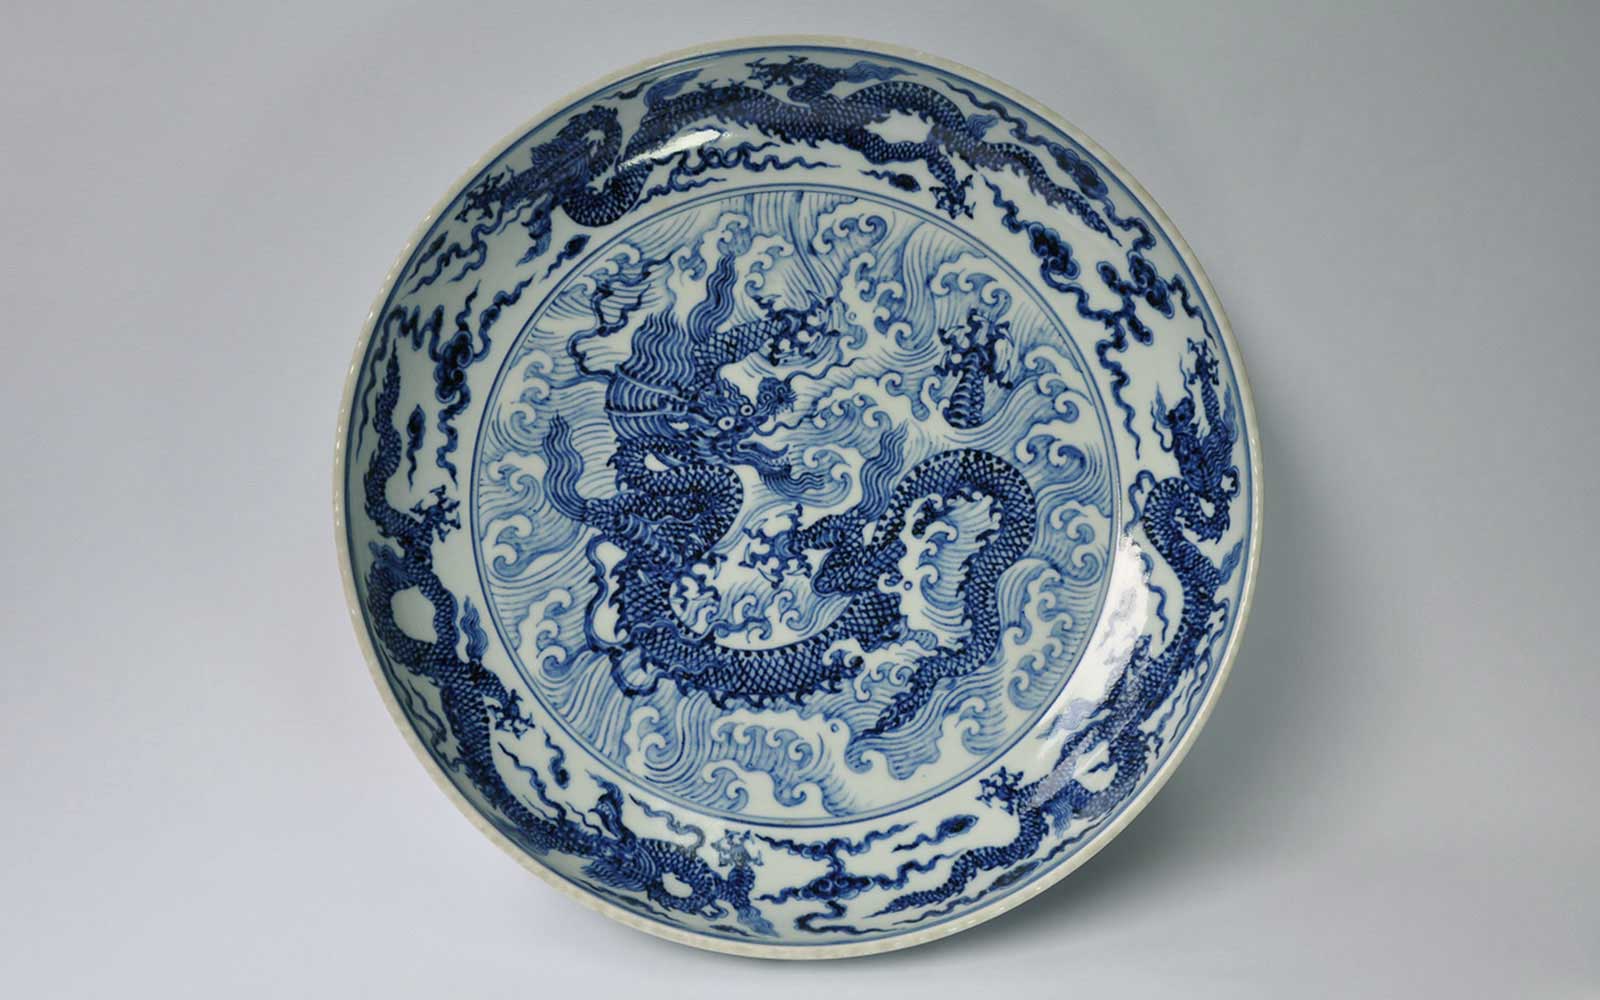 明宣德 青花海水龍大盤 Plate with dragon & waves design, Ming dynasty, Xuande reign and marked (1426-1435 CE), d31.5xh6xf23cm